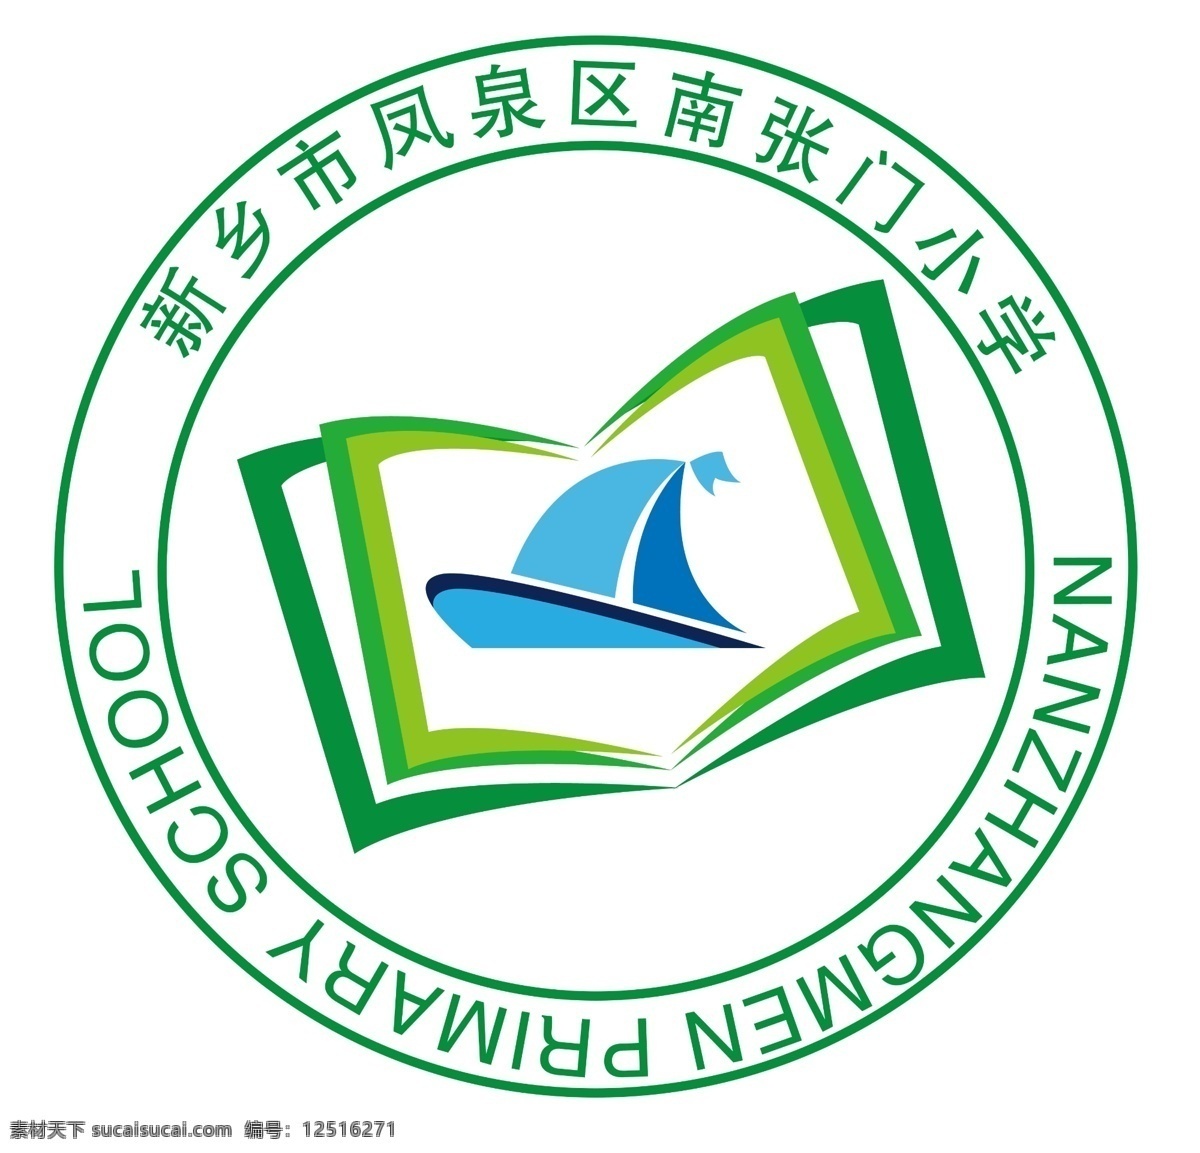 学校校徽 校徽 logo 学校 绿色 原创 标志 标志图标 企业